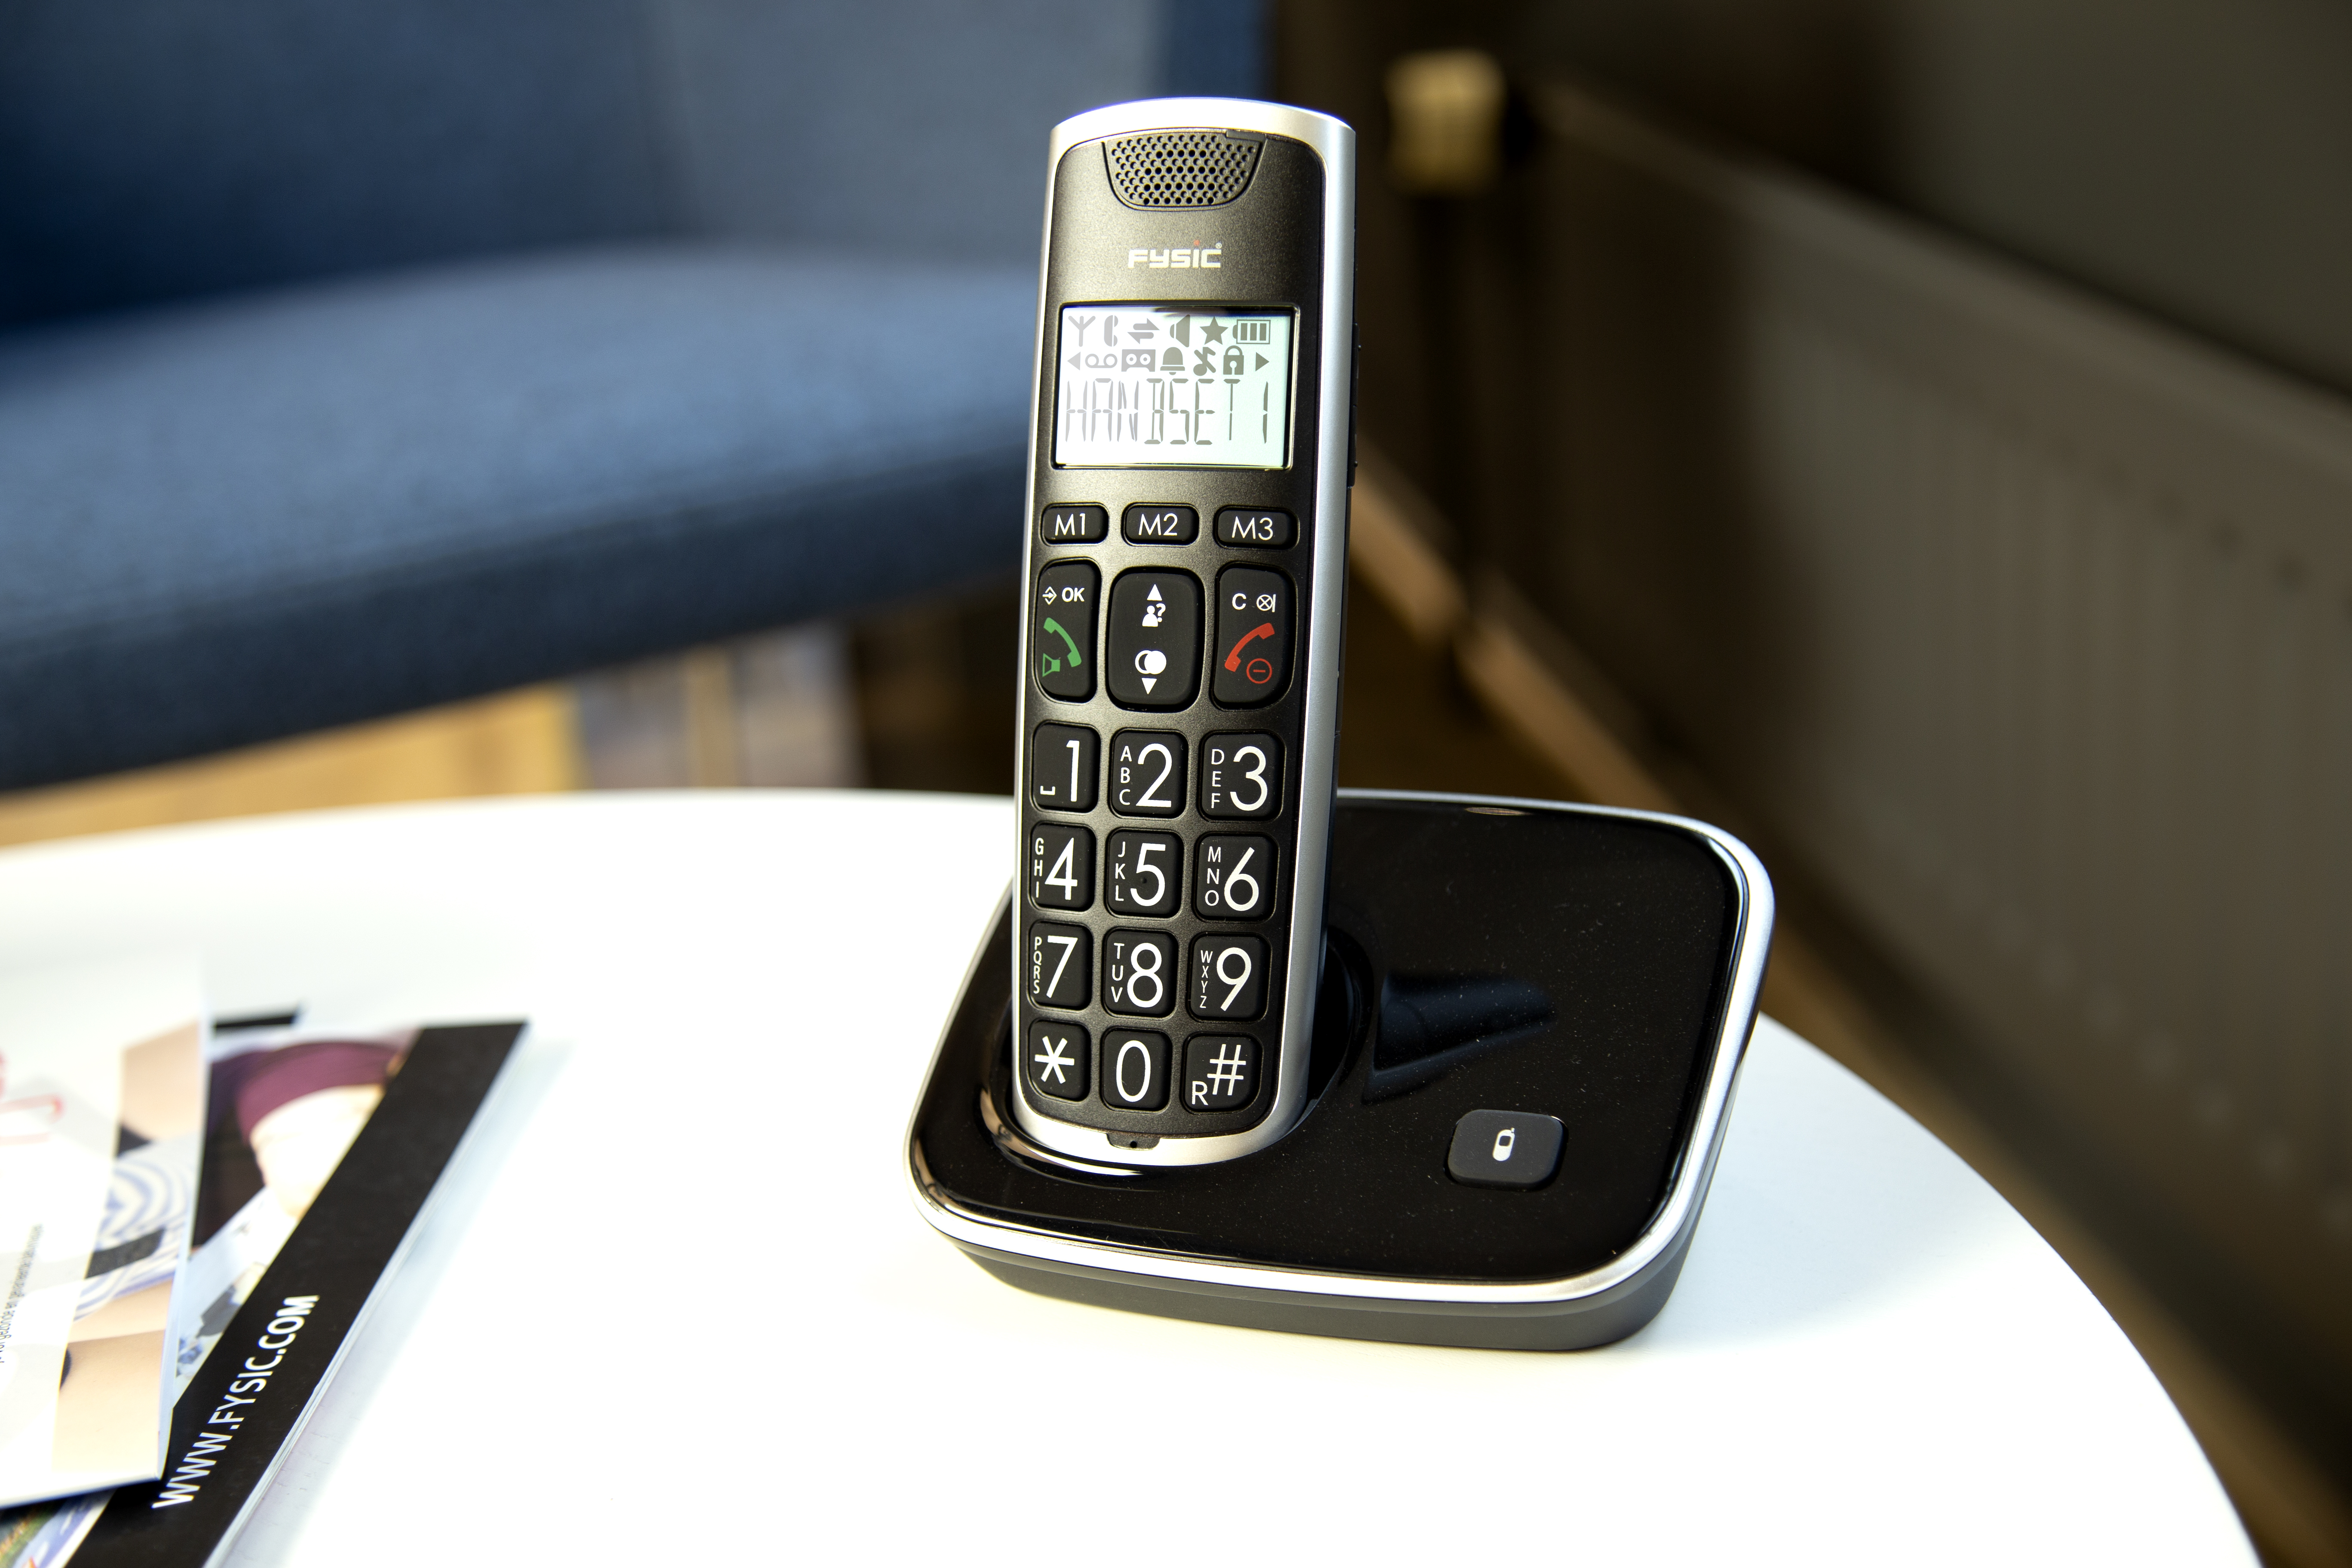 großen Tasten - FYSIC DECT- Schnurloses Seniorentelefon - FX-6020 mit und Telefon Anrufbeantworter